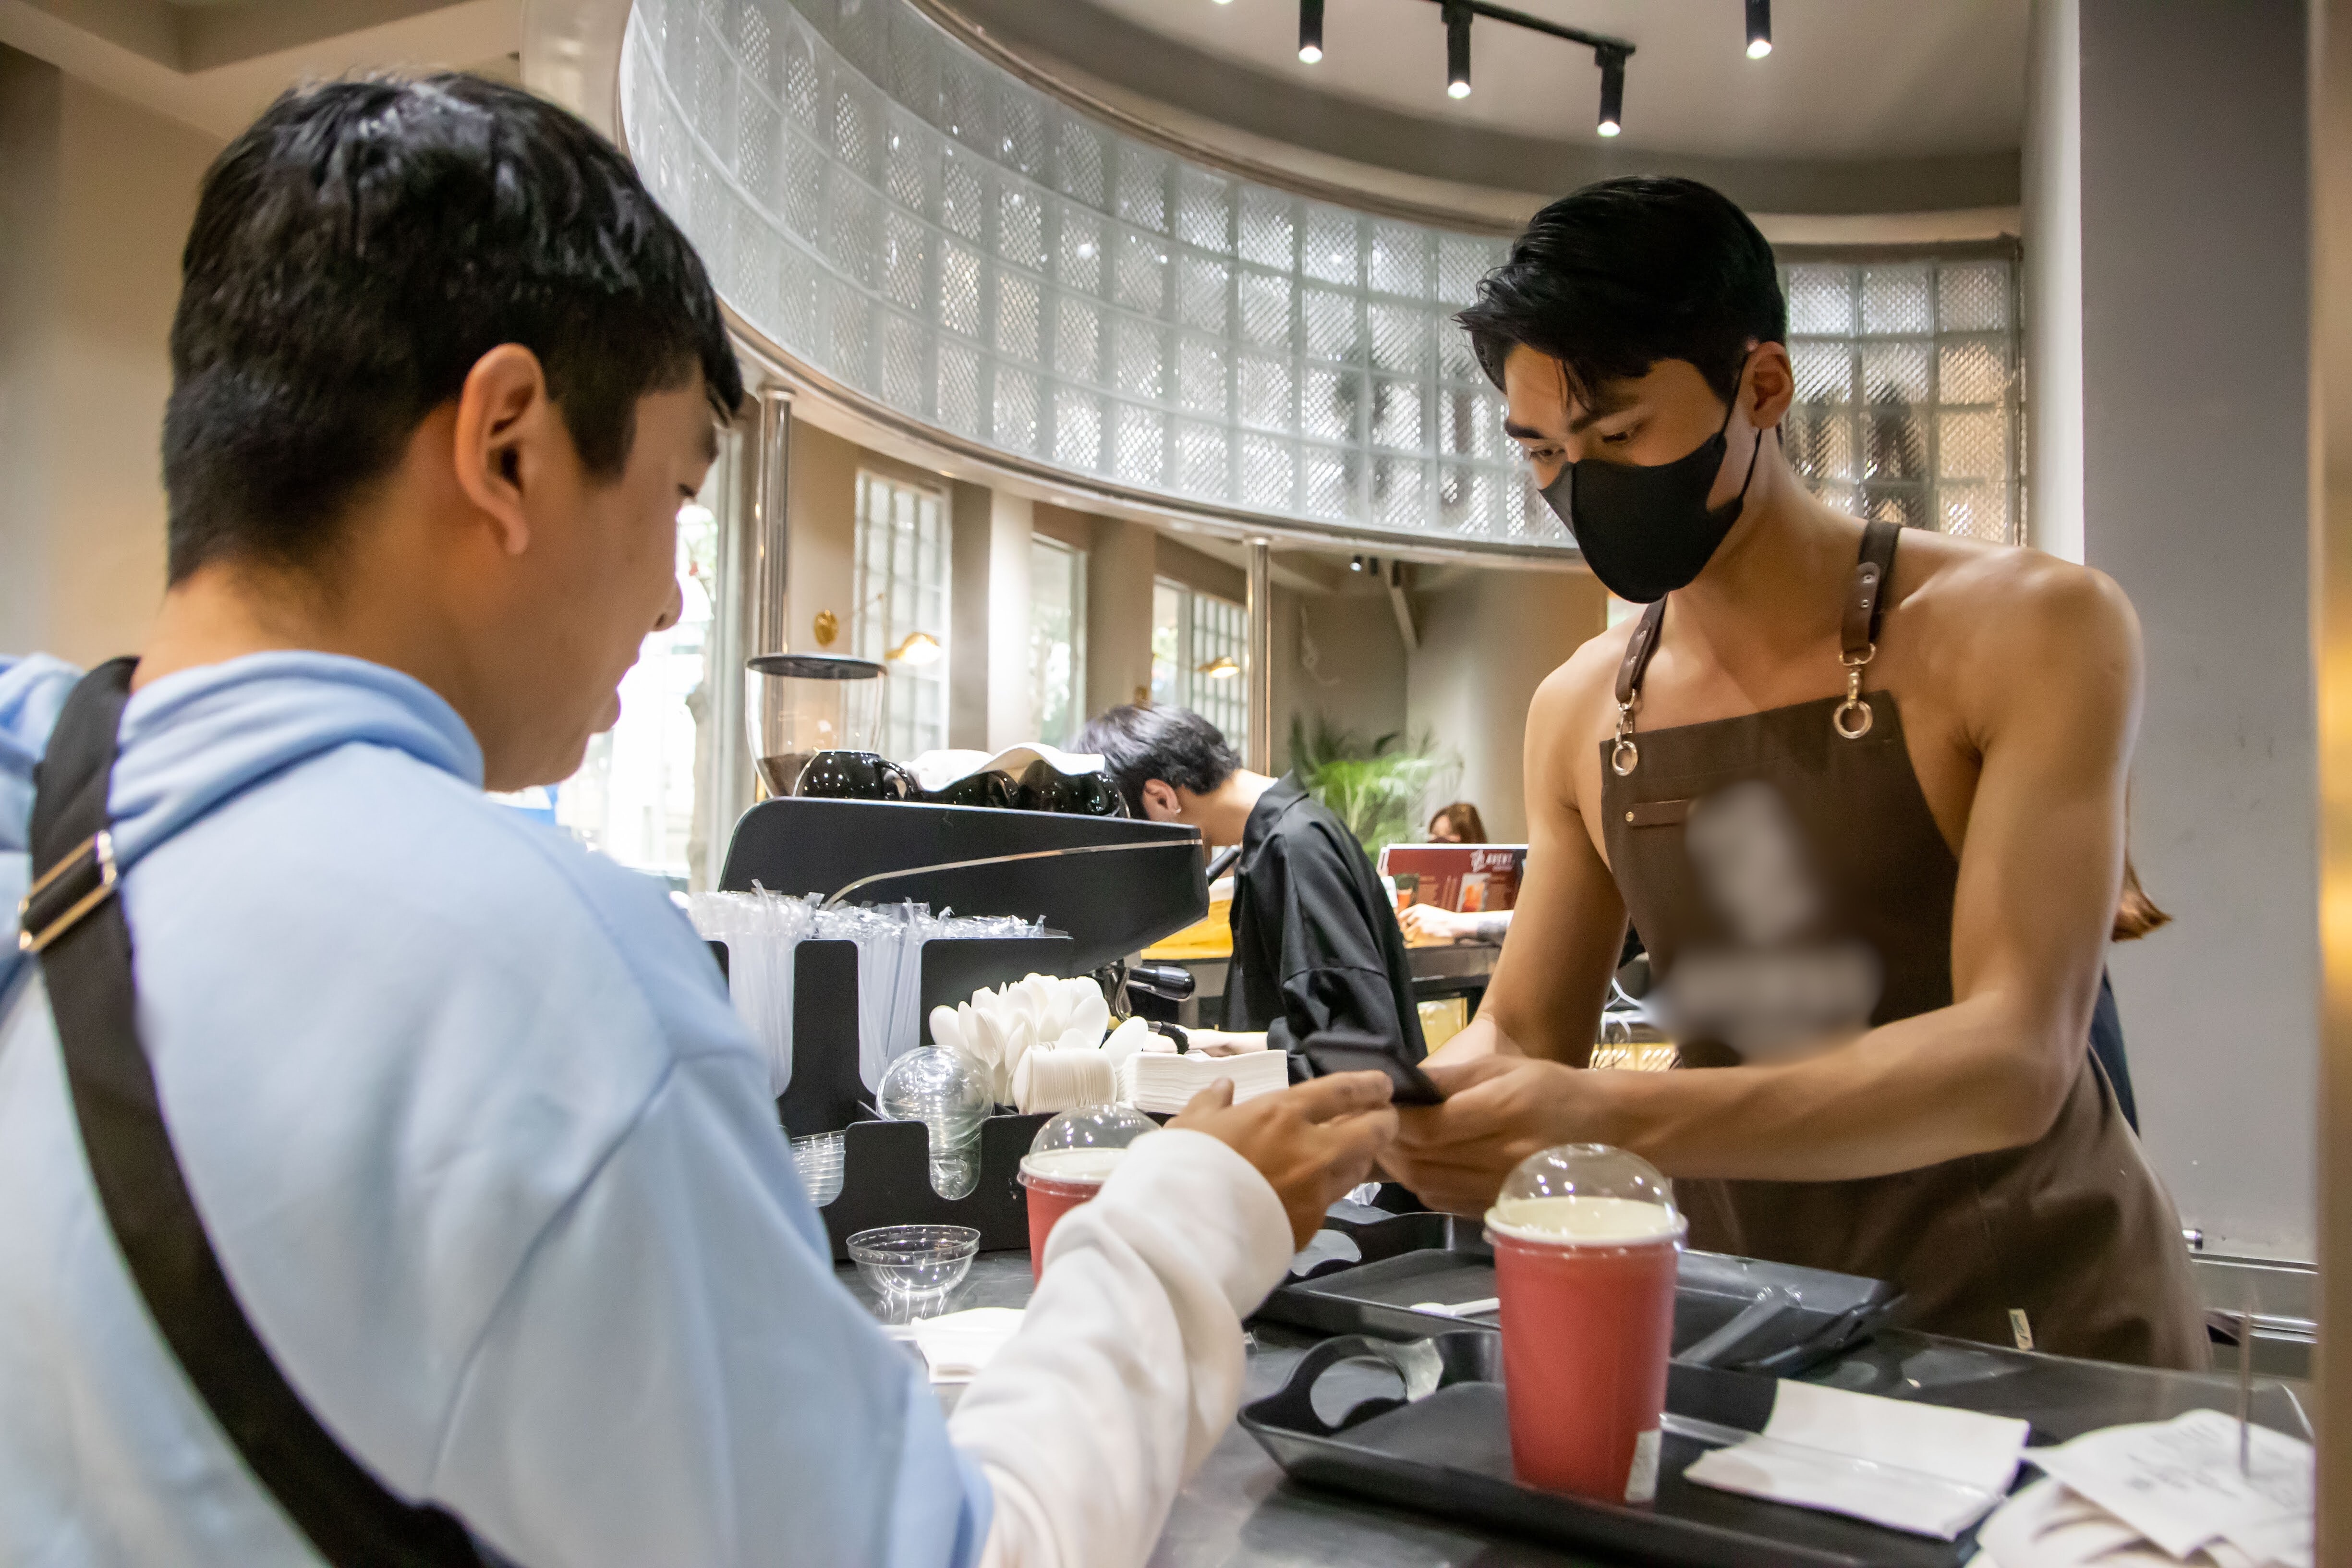 Tranh cãi nhân viên nam không mặc áo, phục vụ cà phê ở Hà Nội ngày 8/3 - ảnh 4